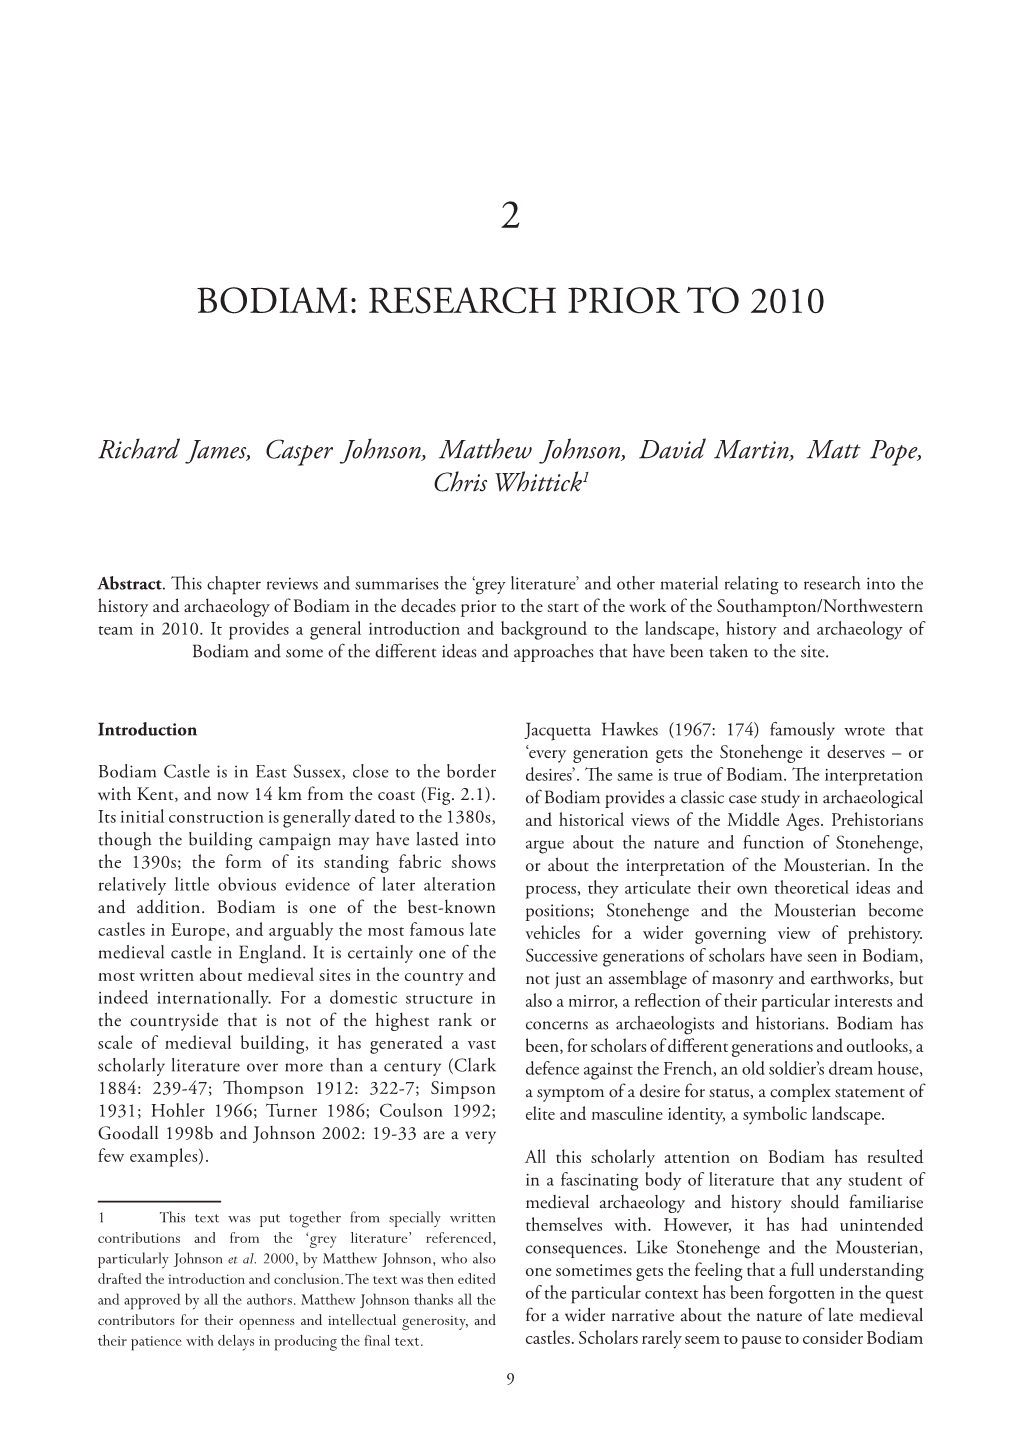 Bodiam: Research Prior to 2010